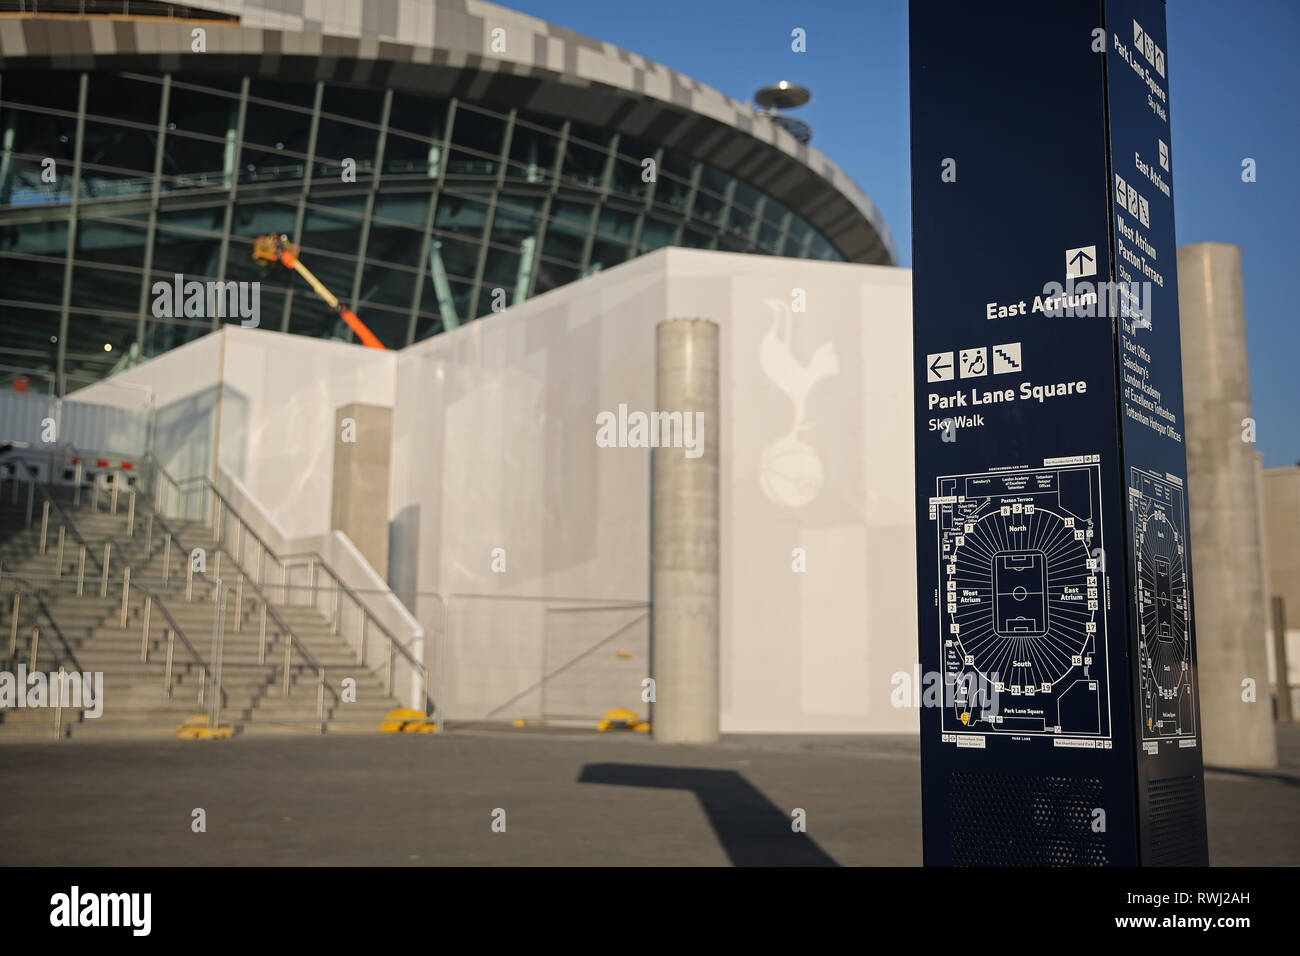 Vue générale du nouveau stade et la signalisation - Tottenham Hotspur nouveau stade de développement, White Hart Lane, London - 27 Février 2019 Banque D'Images